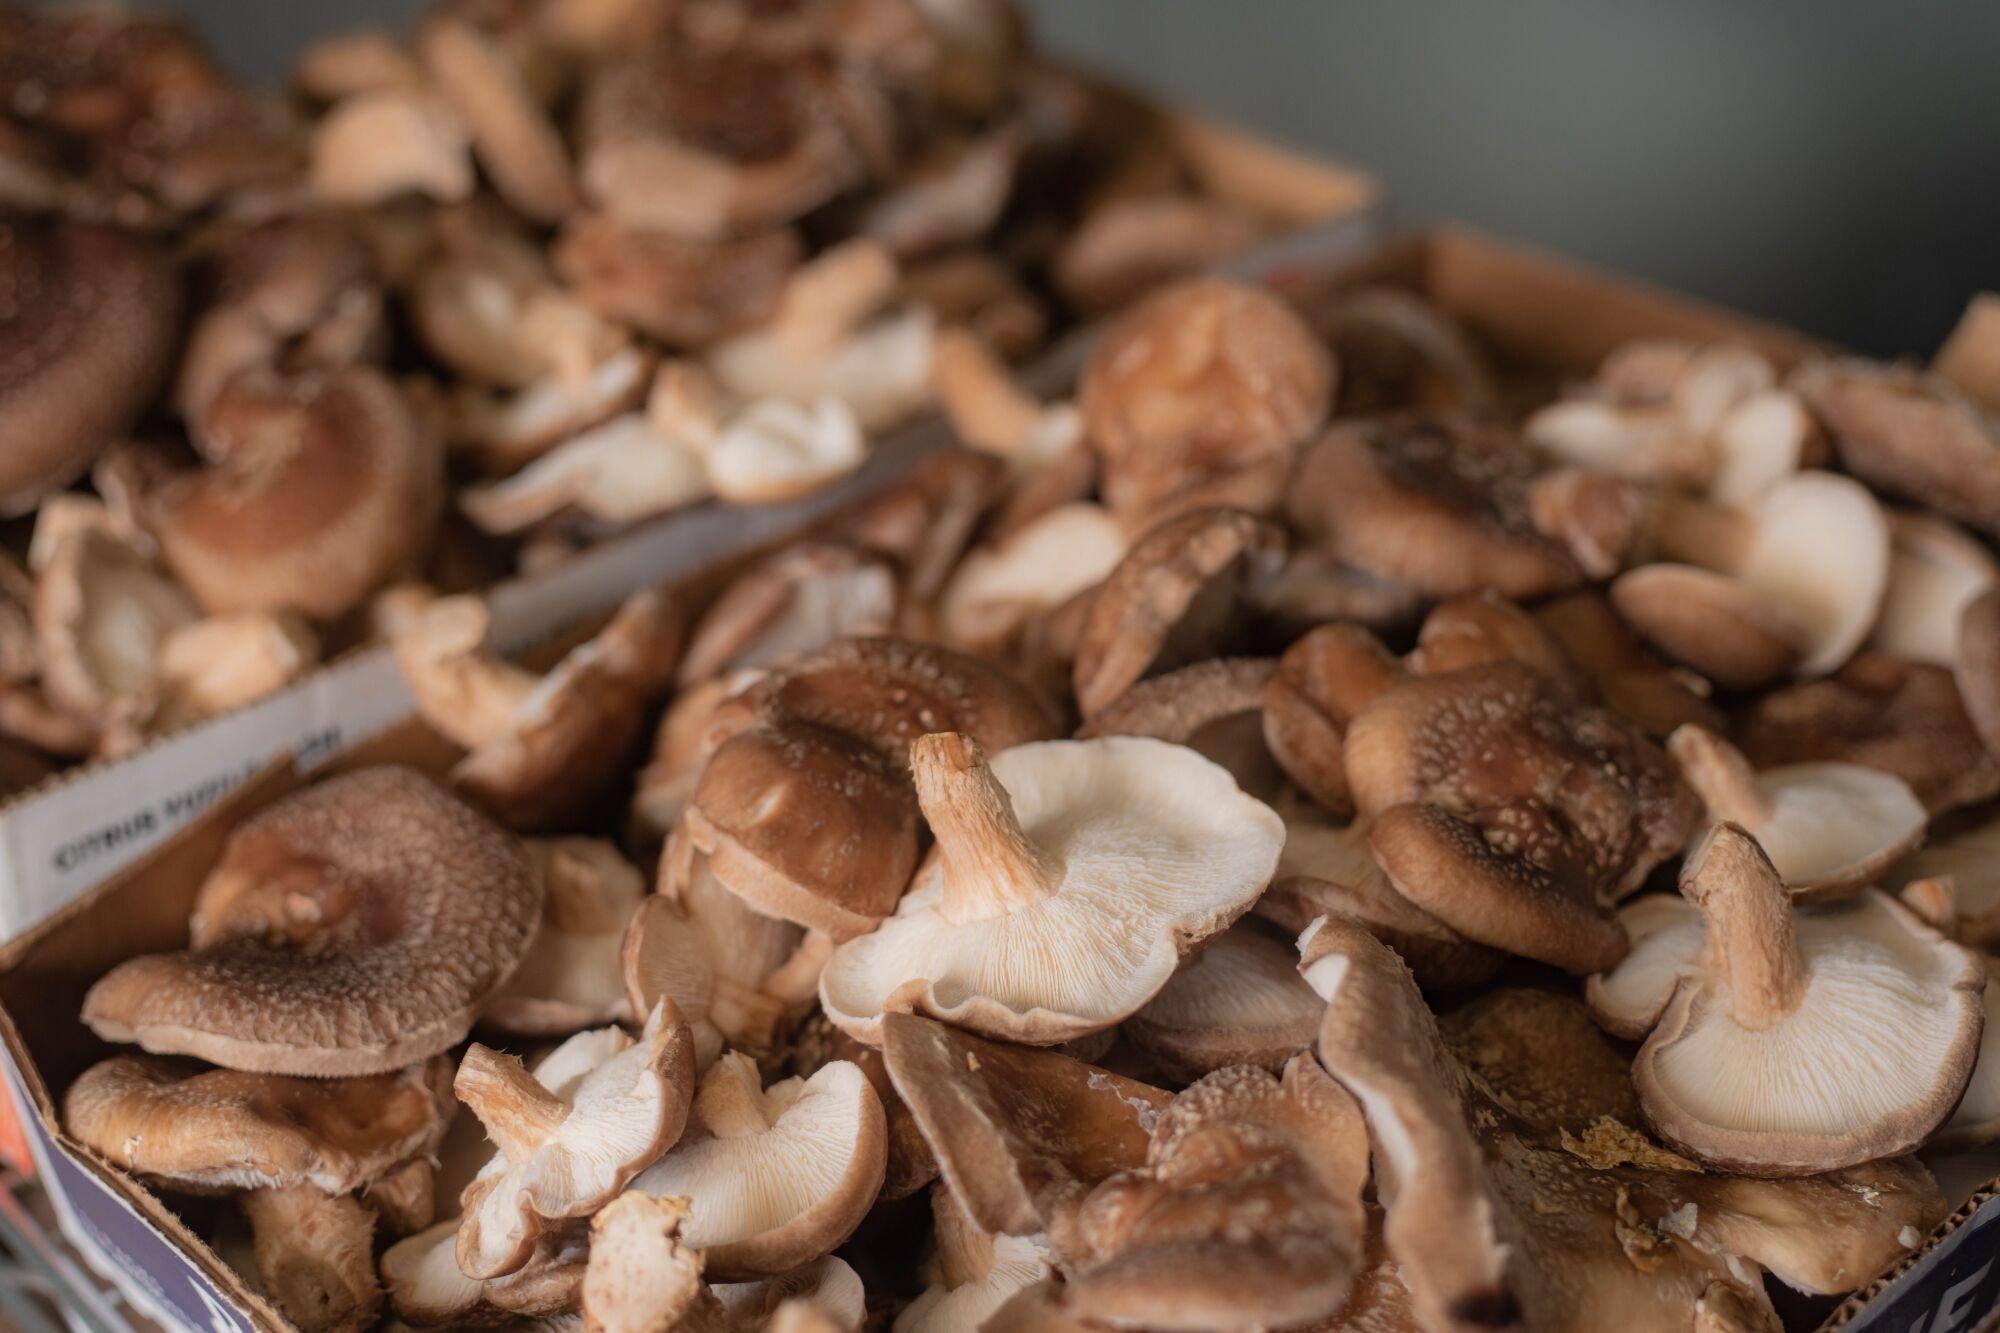 A close-up of shiitake mushrooms.